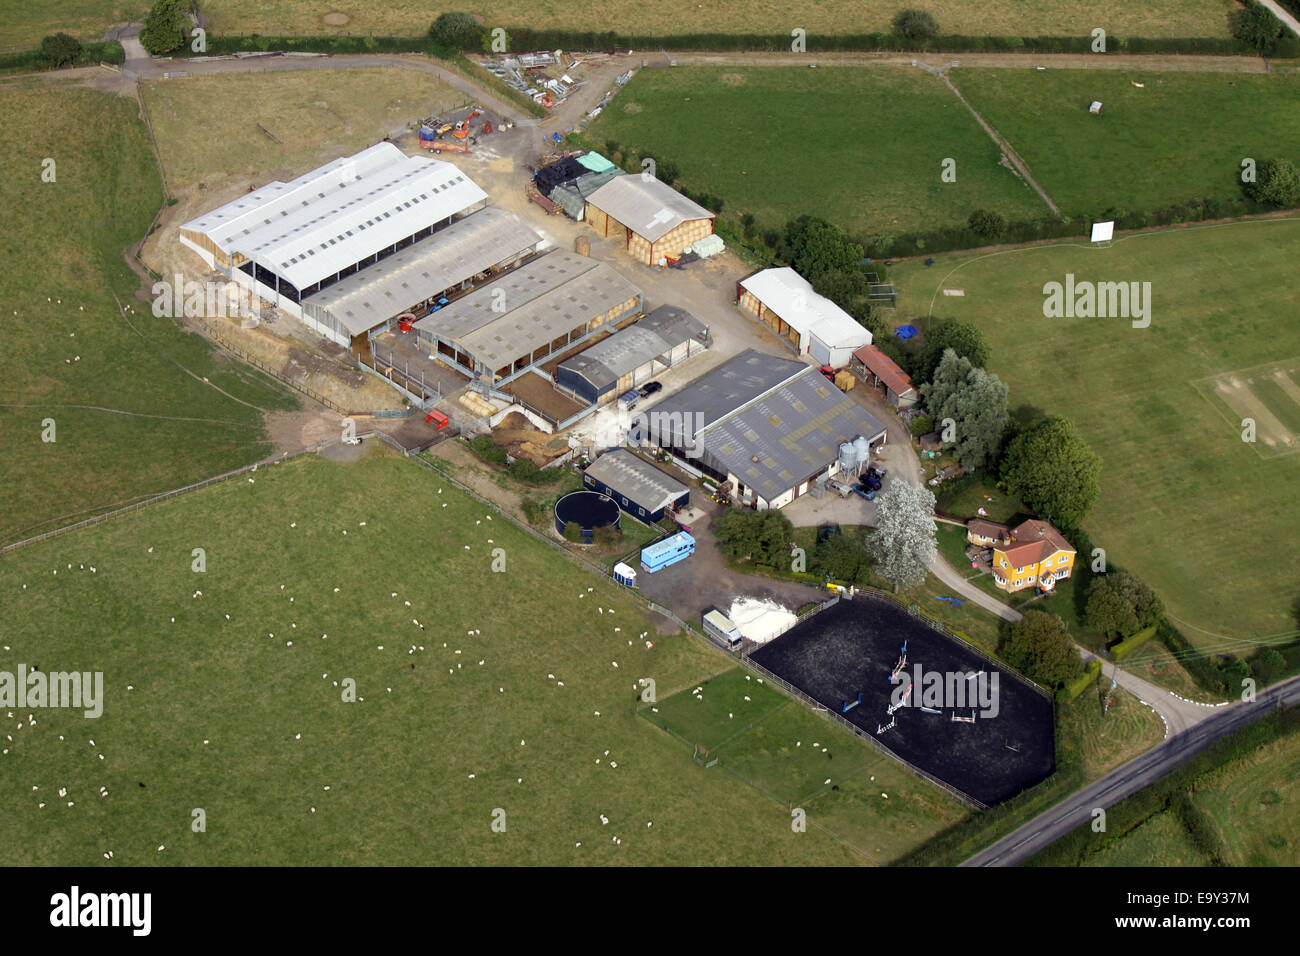 Vue aérienne d'une ferme typique UK dans le Bedfordshire, Angleterre Banque D'Images